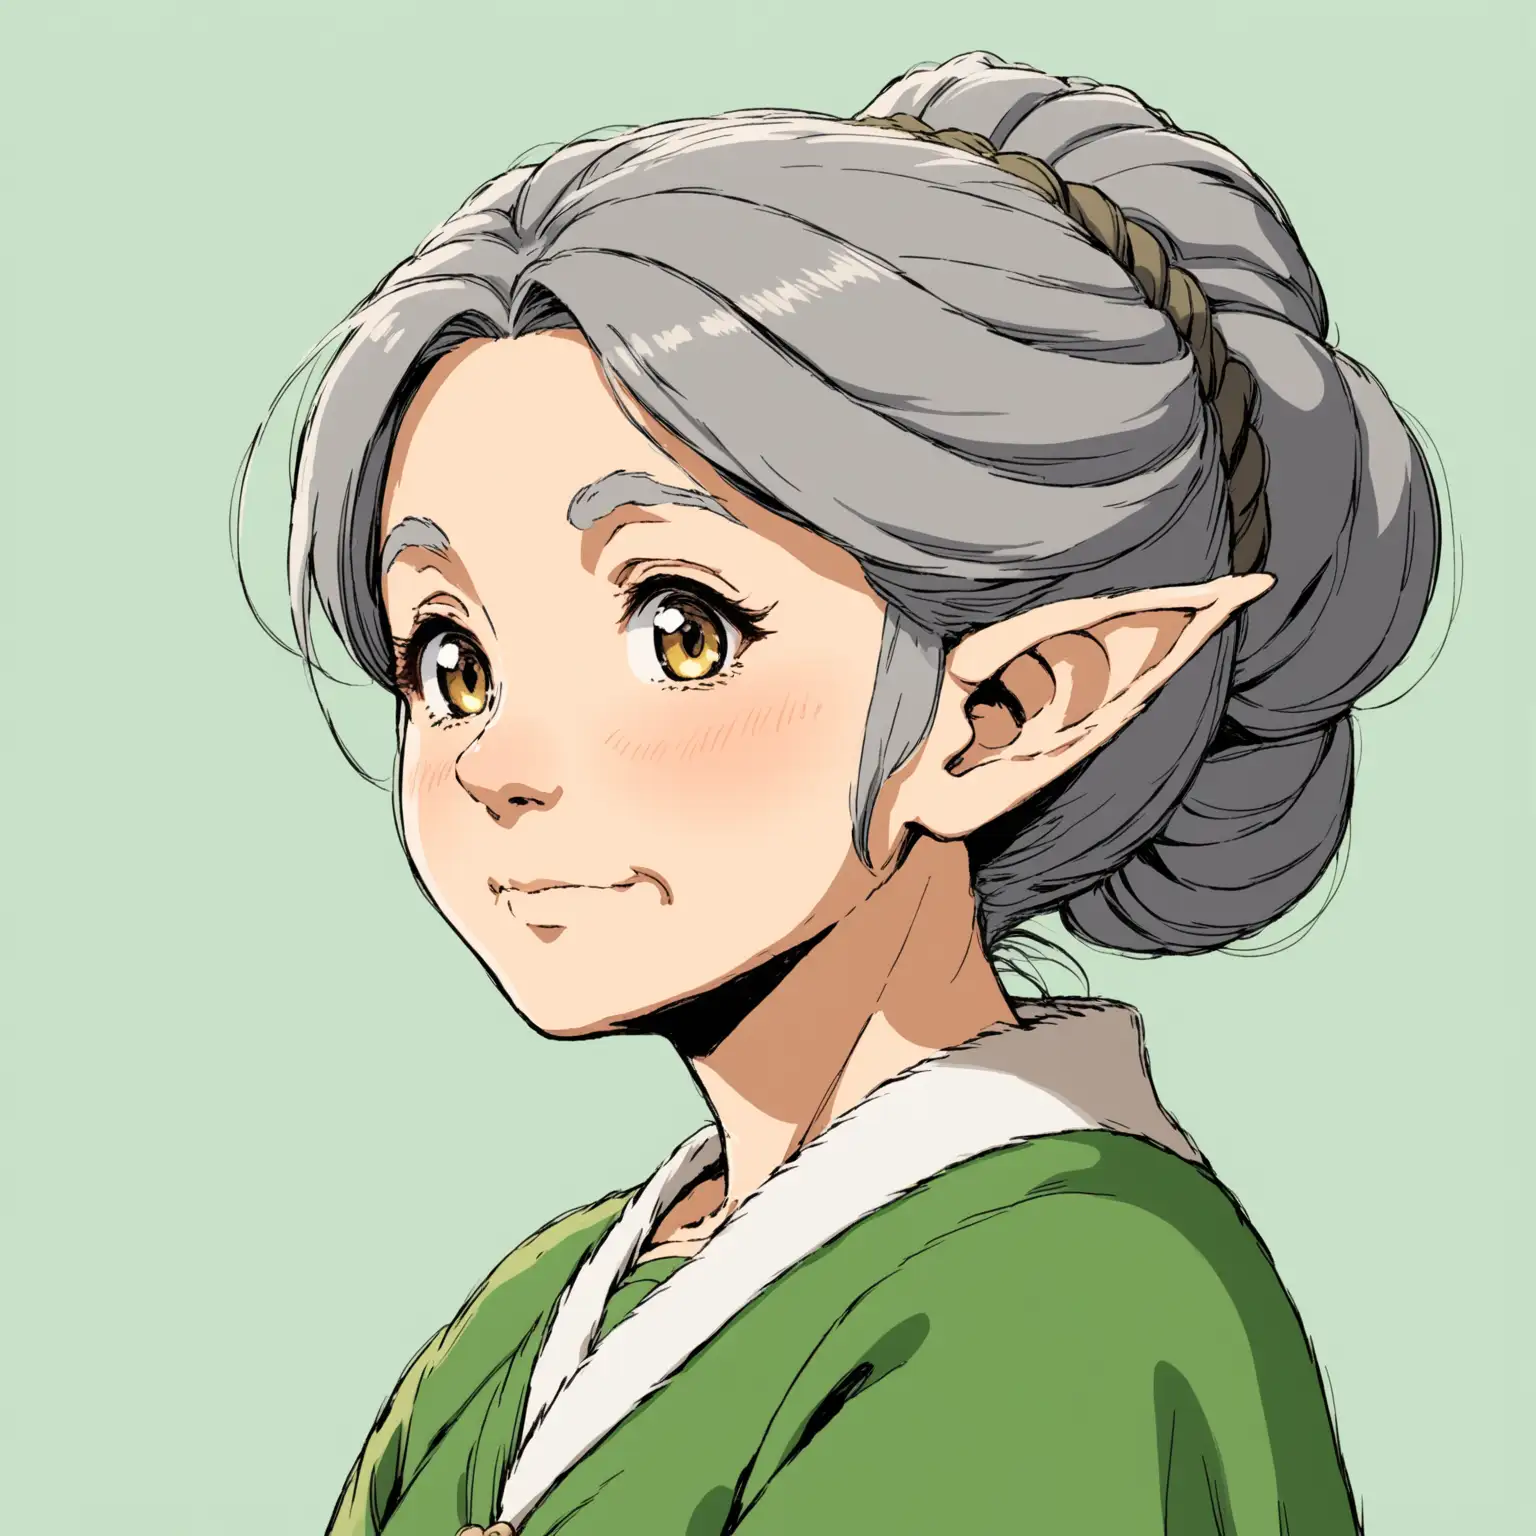 Ghibli Style Elderly Female Elf with Dark Grey Updo Hair